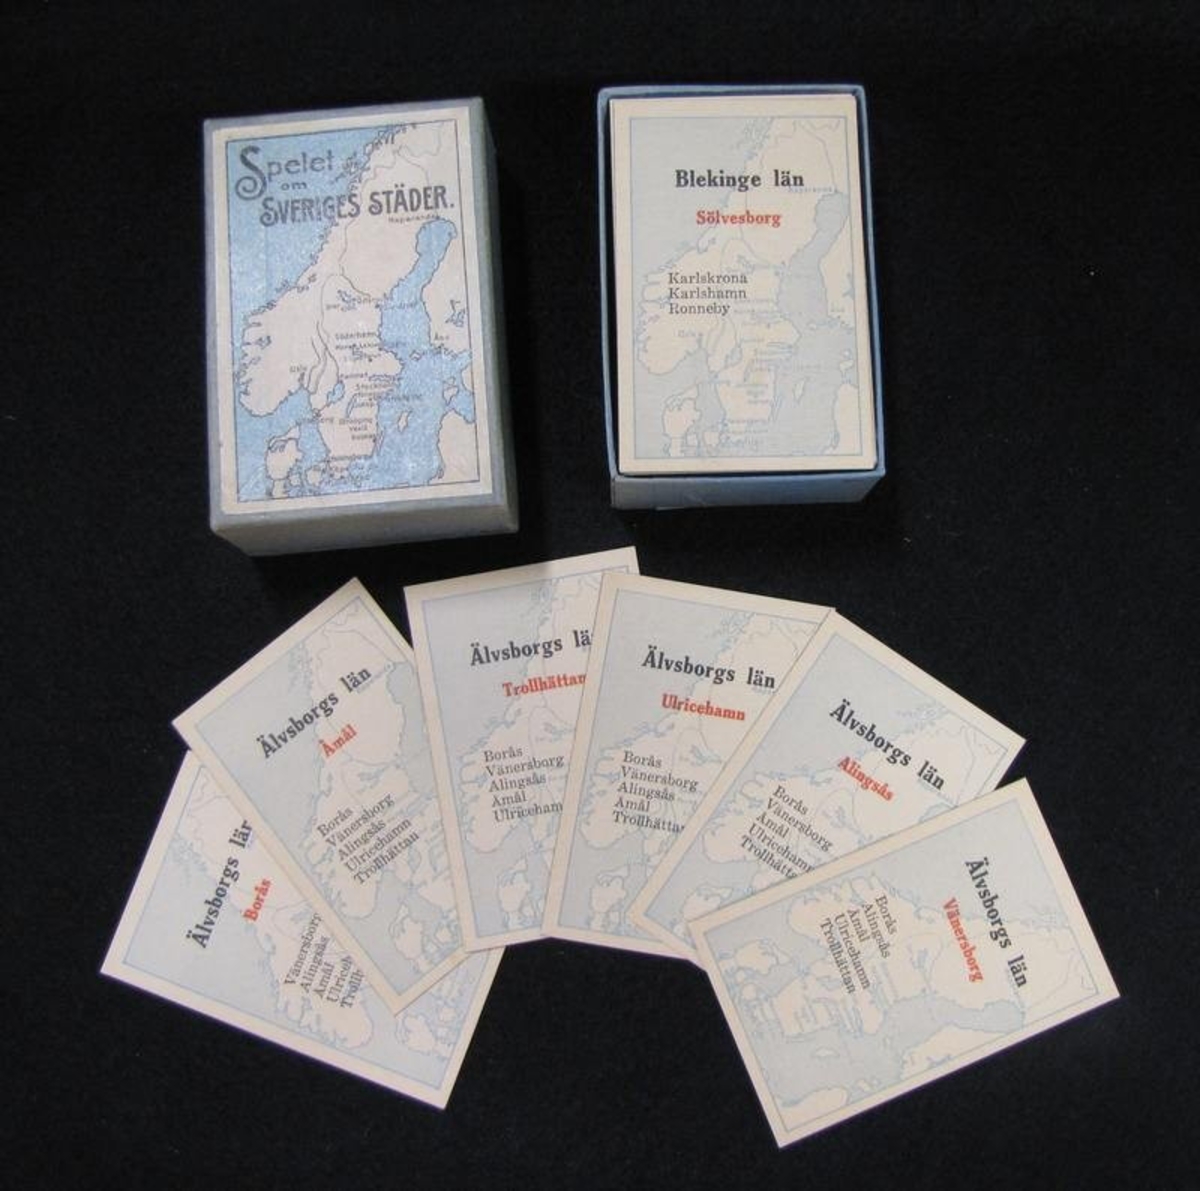 Ett kortspel med namnet ''Sveriges städer'' liggande i en papplåda innhållande 115 spelkort samt spelregler.

På varje kort finns namnet på en svensk stad samt län. Spelet gick sedan ut på att samla alla städer i ett och samma län.